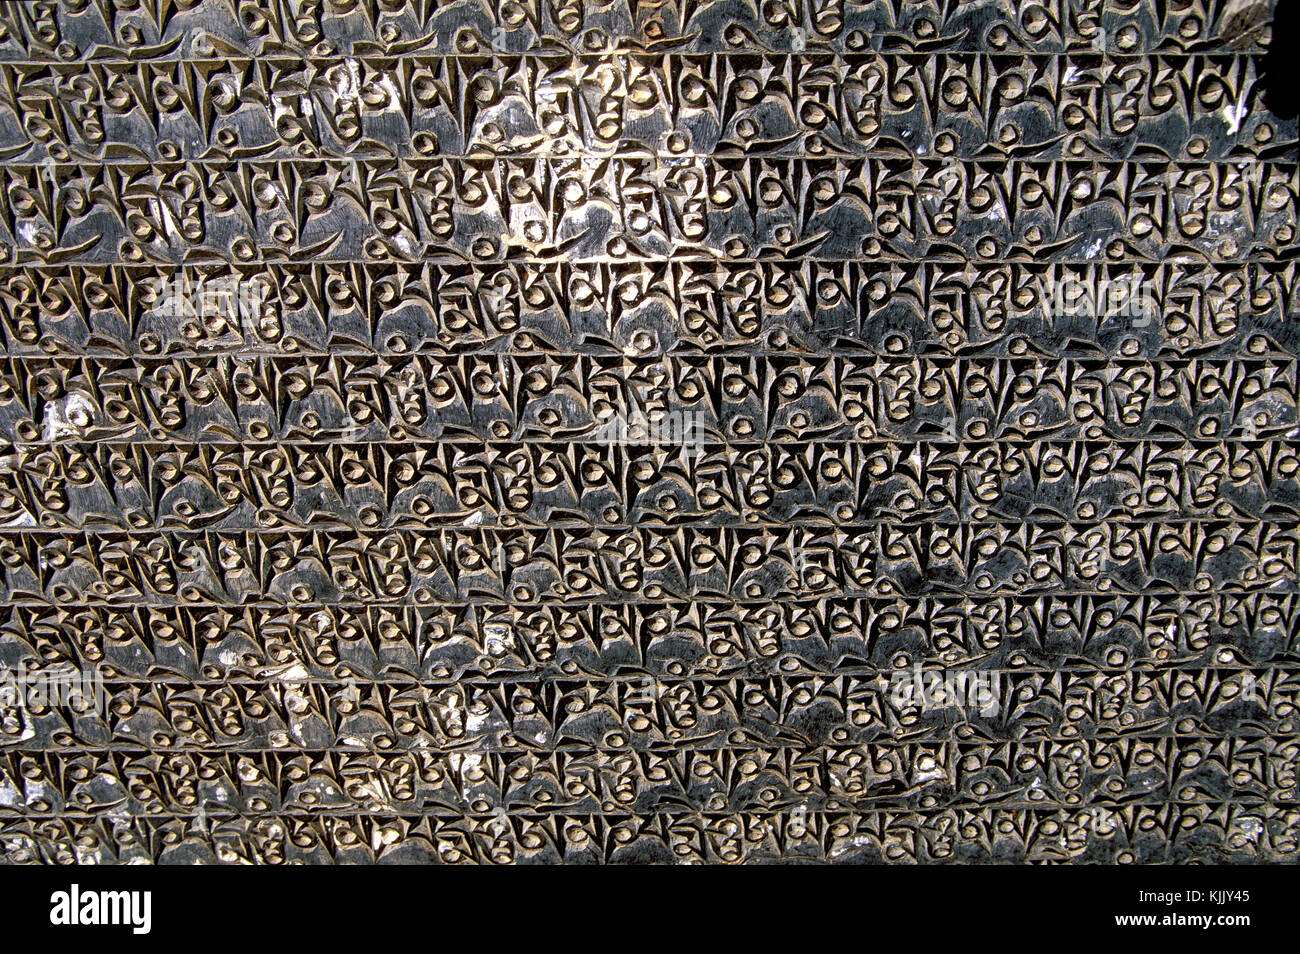 Les mantras et écritures tibétain gravé sur une pierre. Le Népal. Banque D'Images